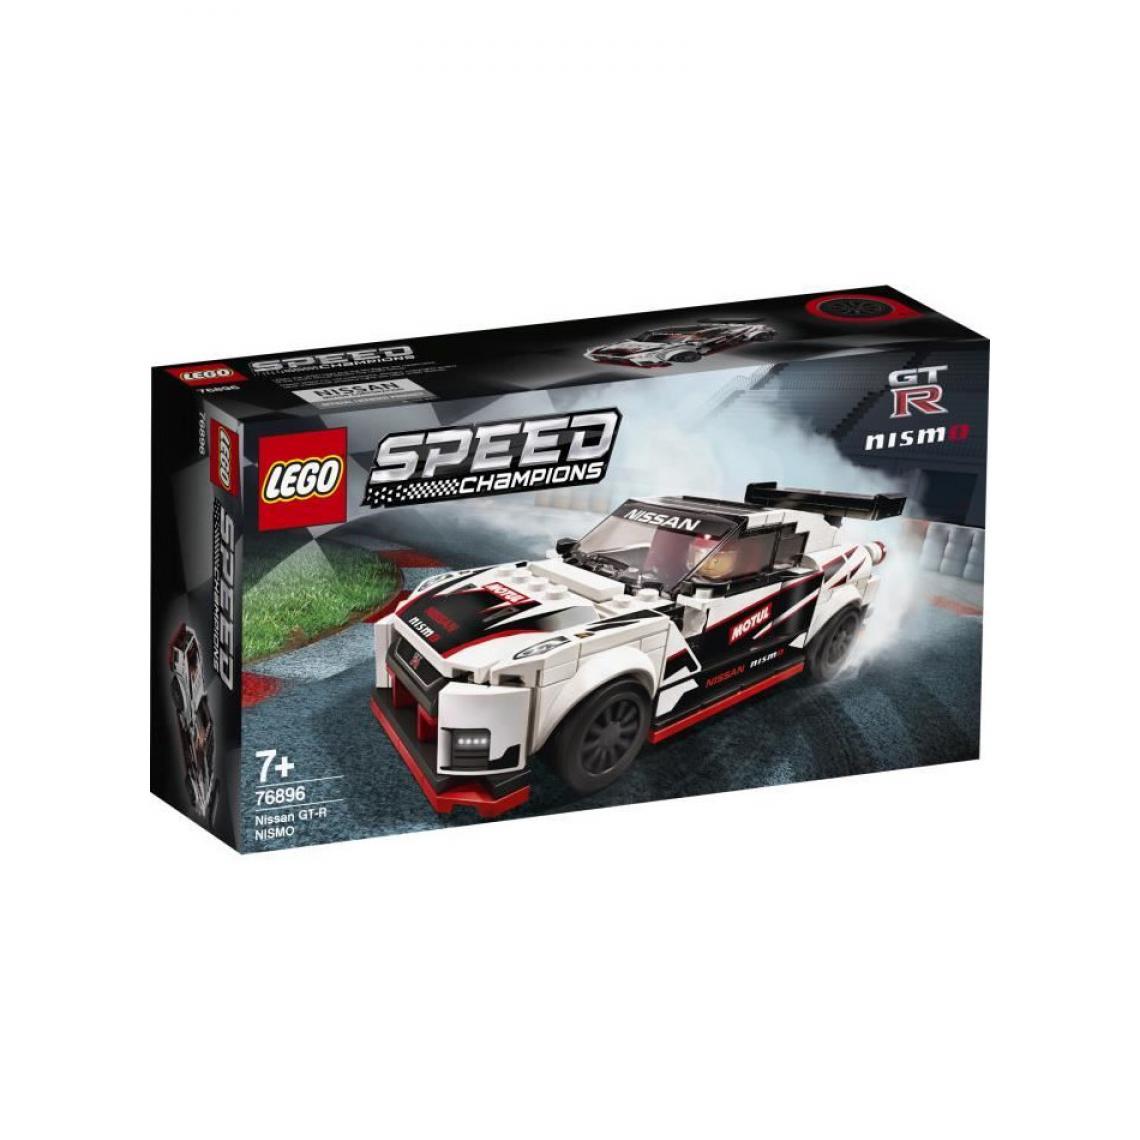 Lego - 76896 Nissan GT-R NISMO LEGO Speed Champions - Briques Lego